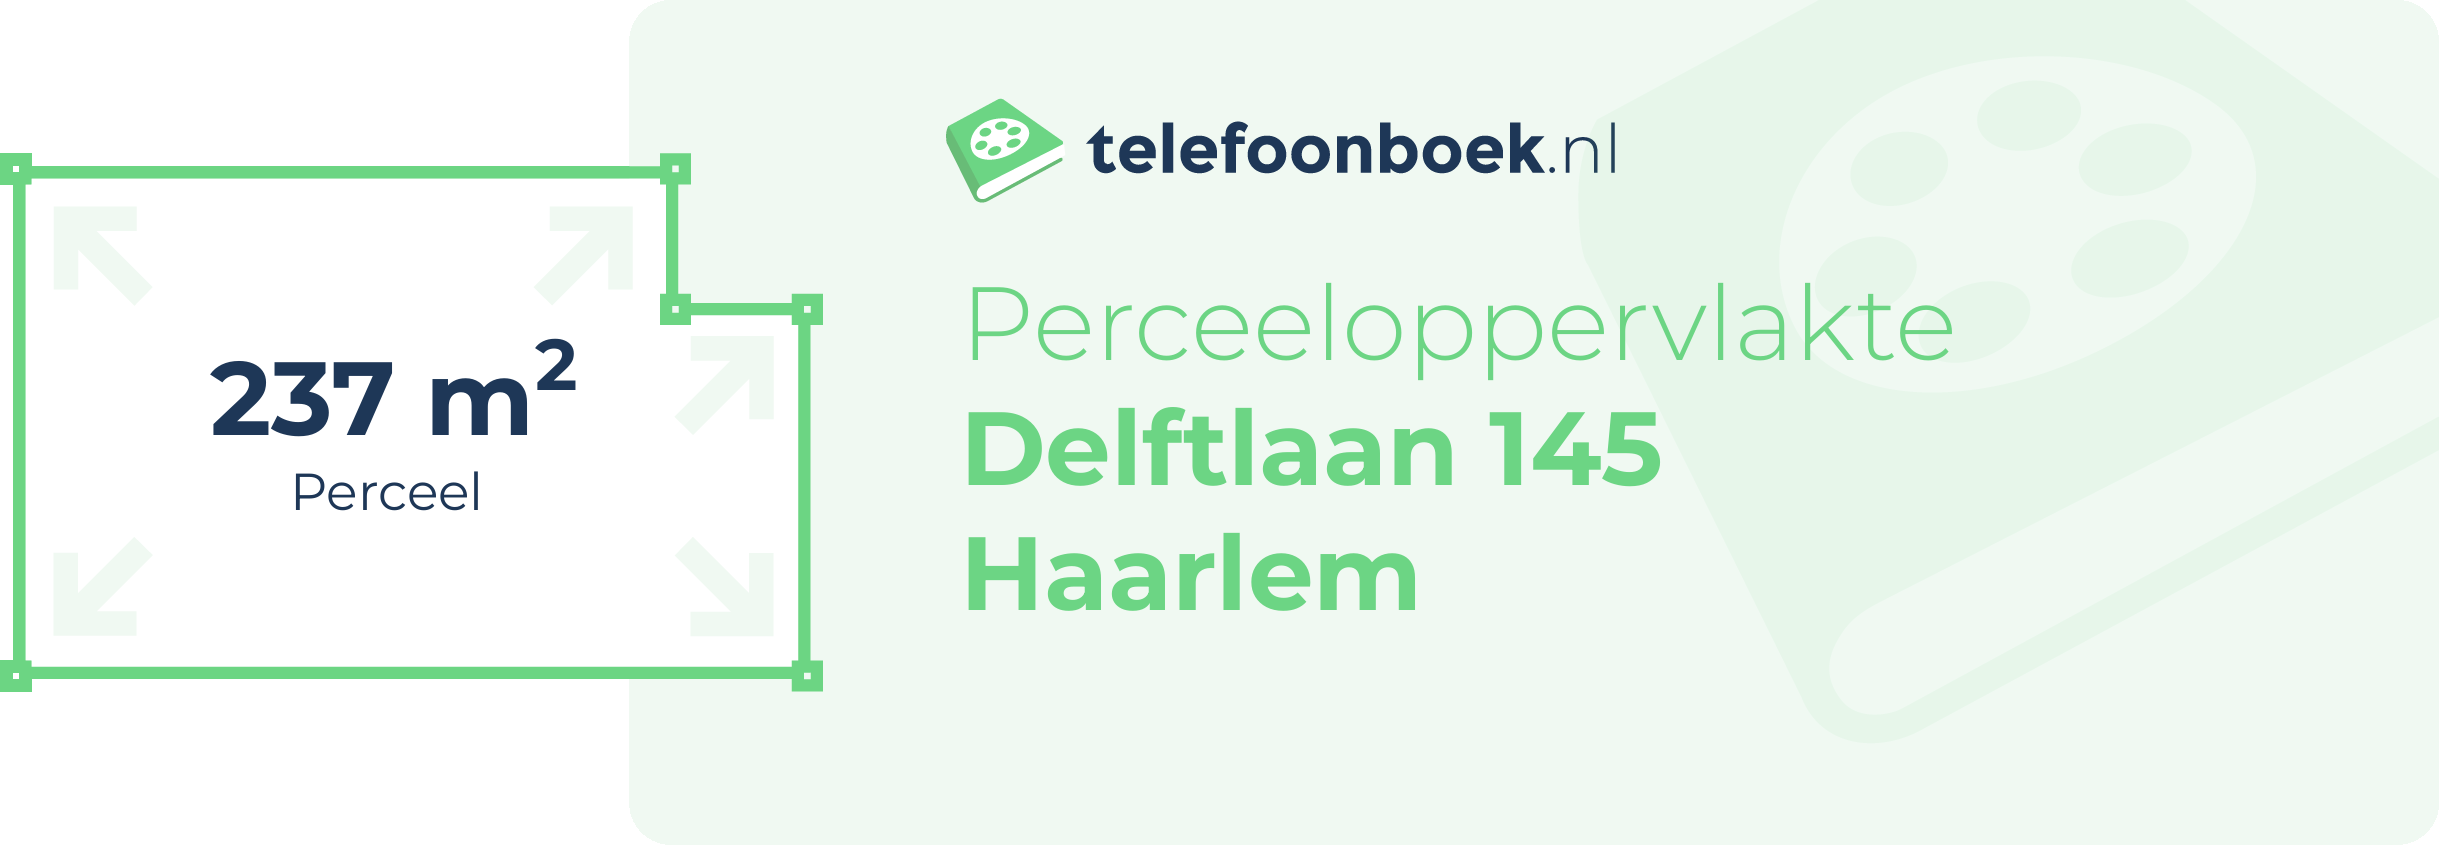 Perceeloppervlakte Delftlaan 145 Haarlem